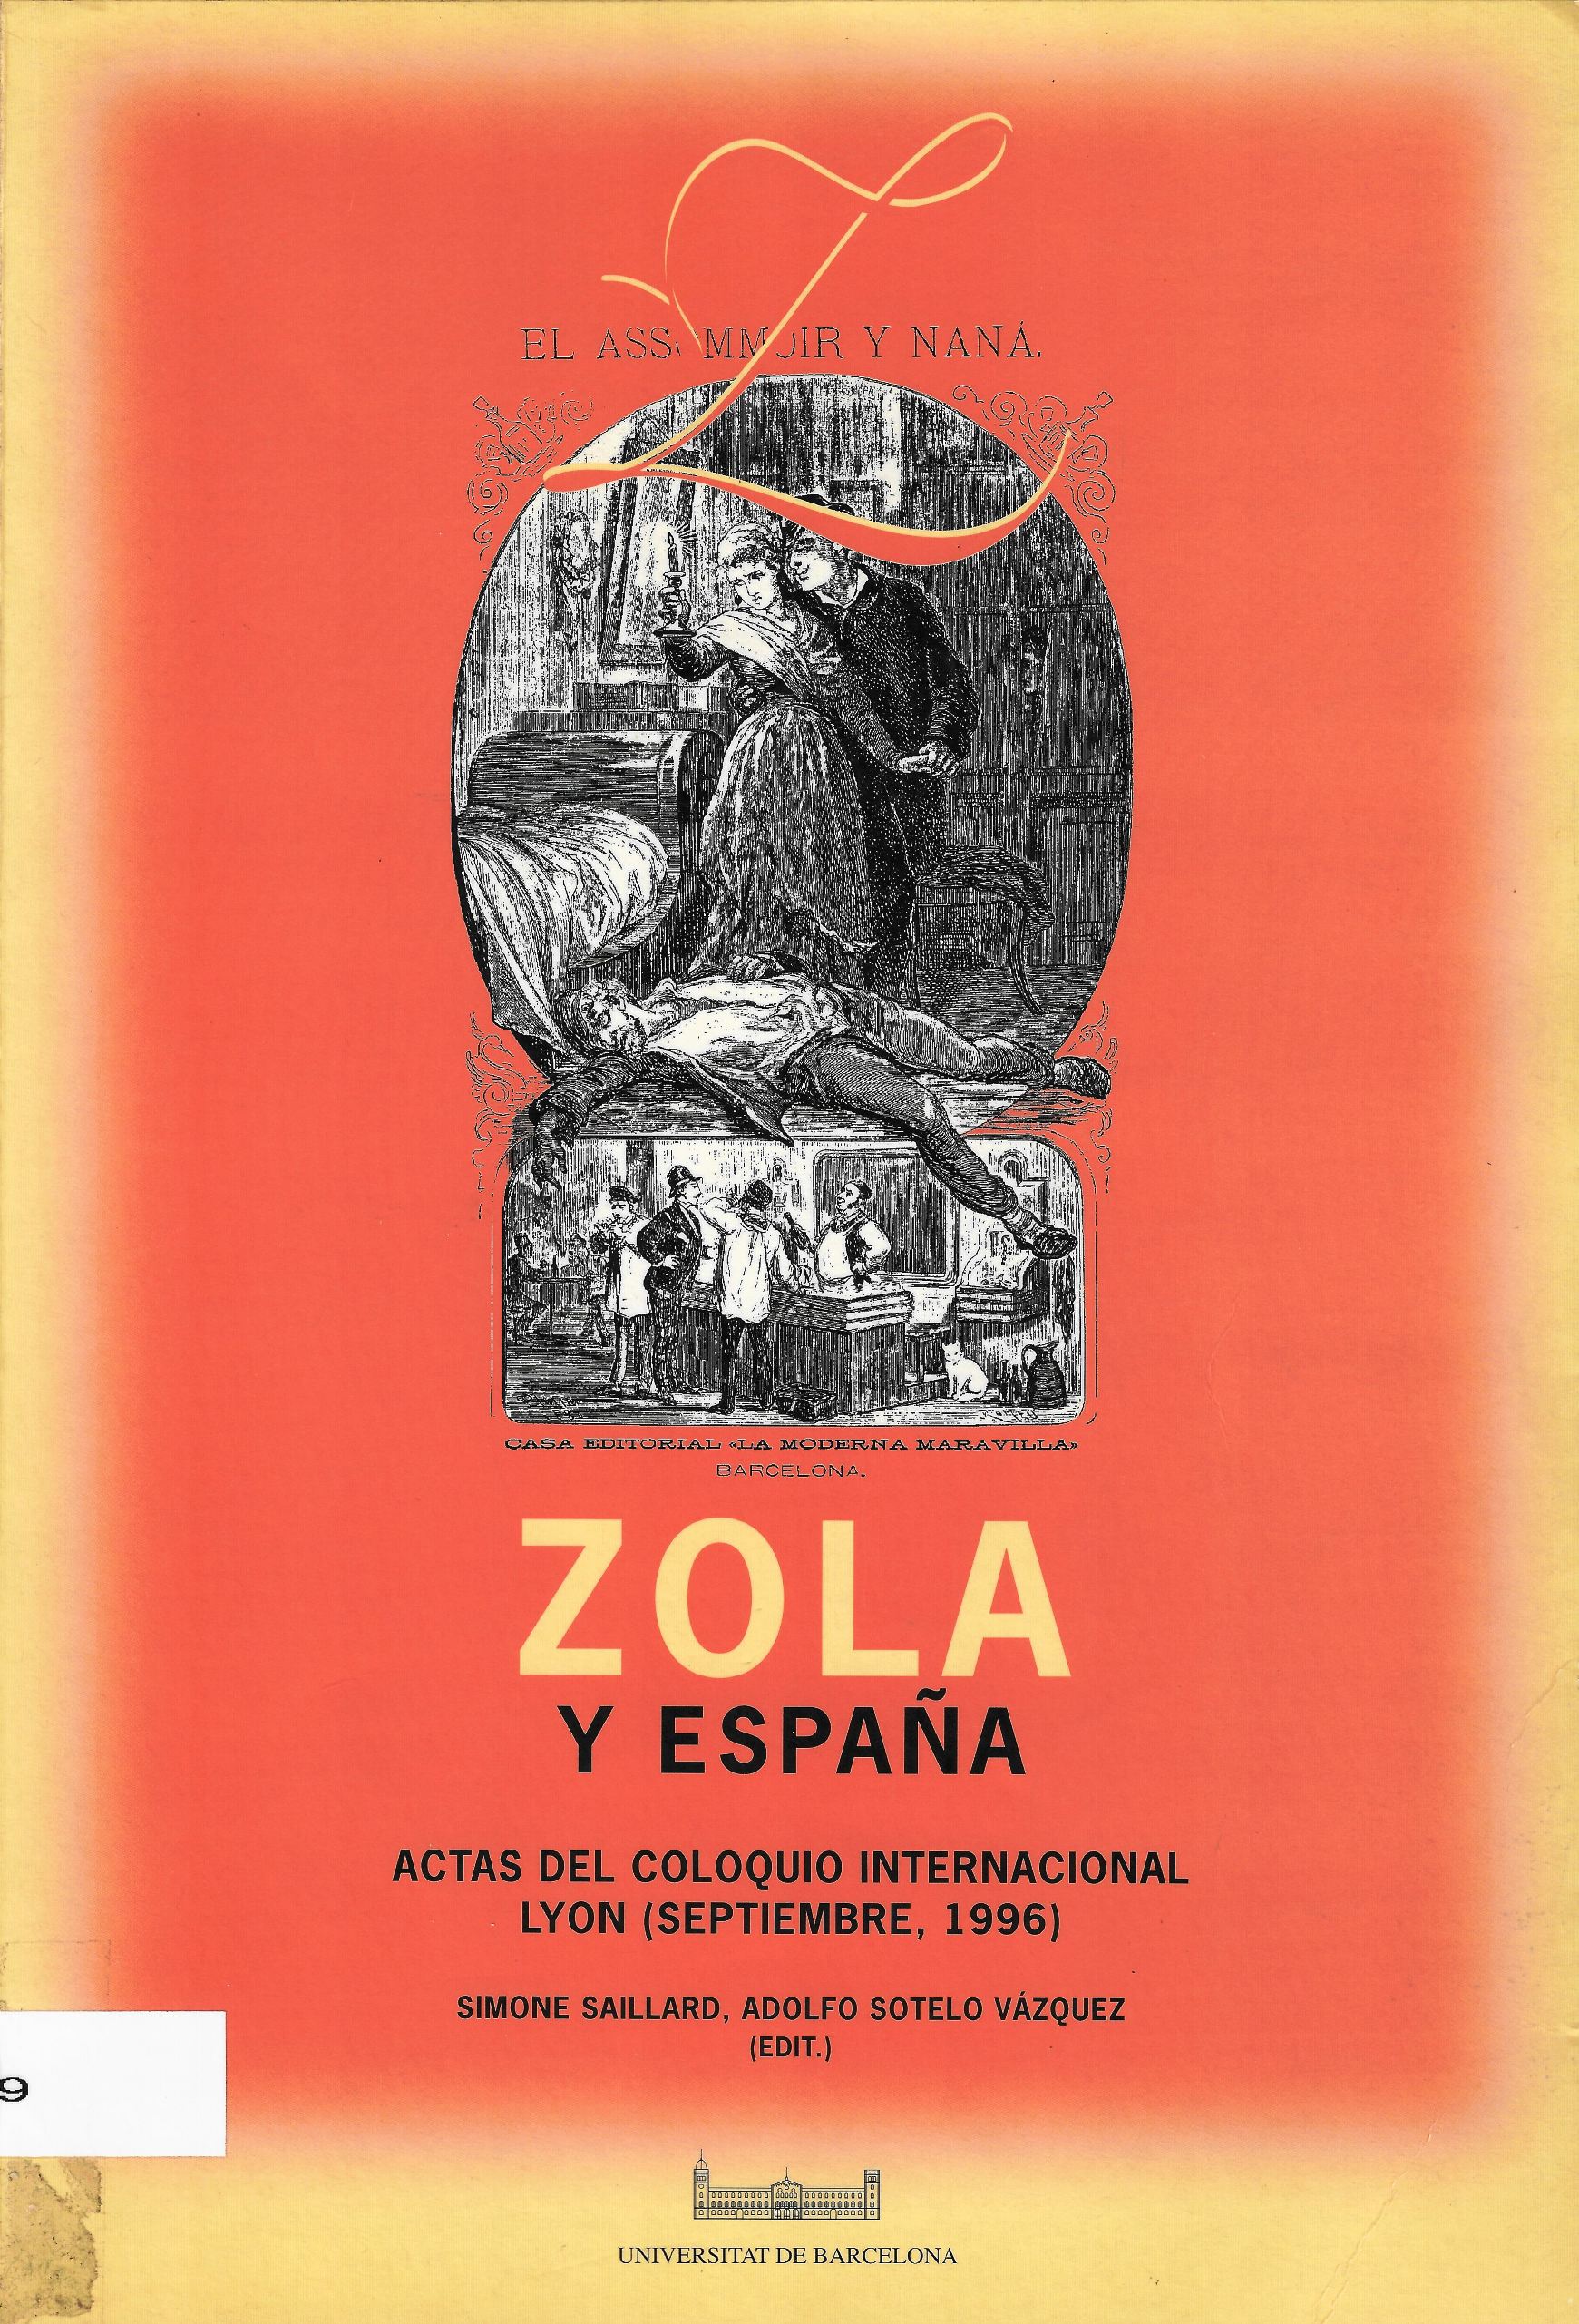 Imagen de portada del libro Zola y España